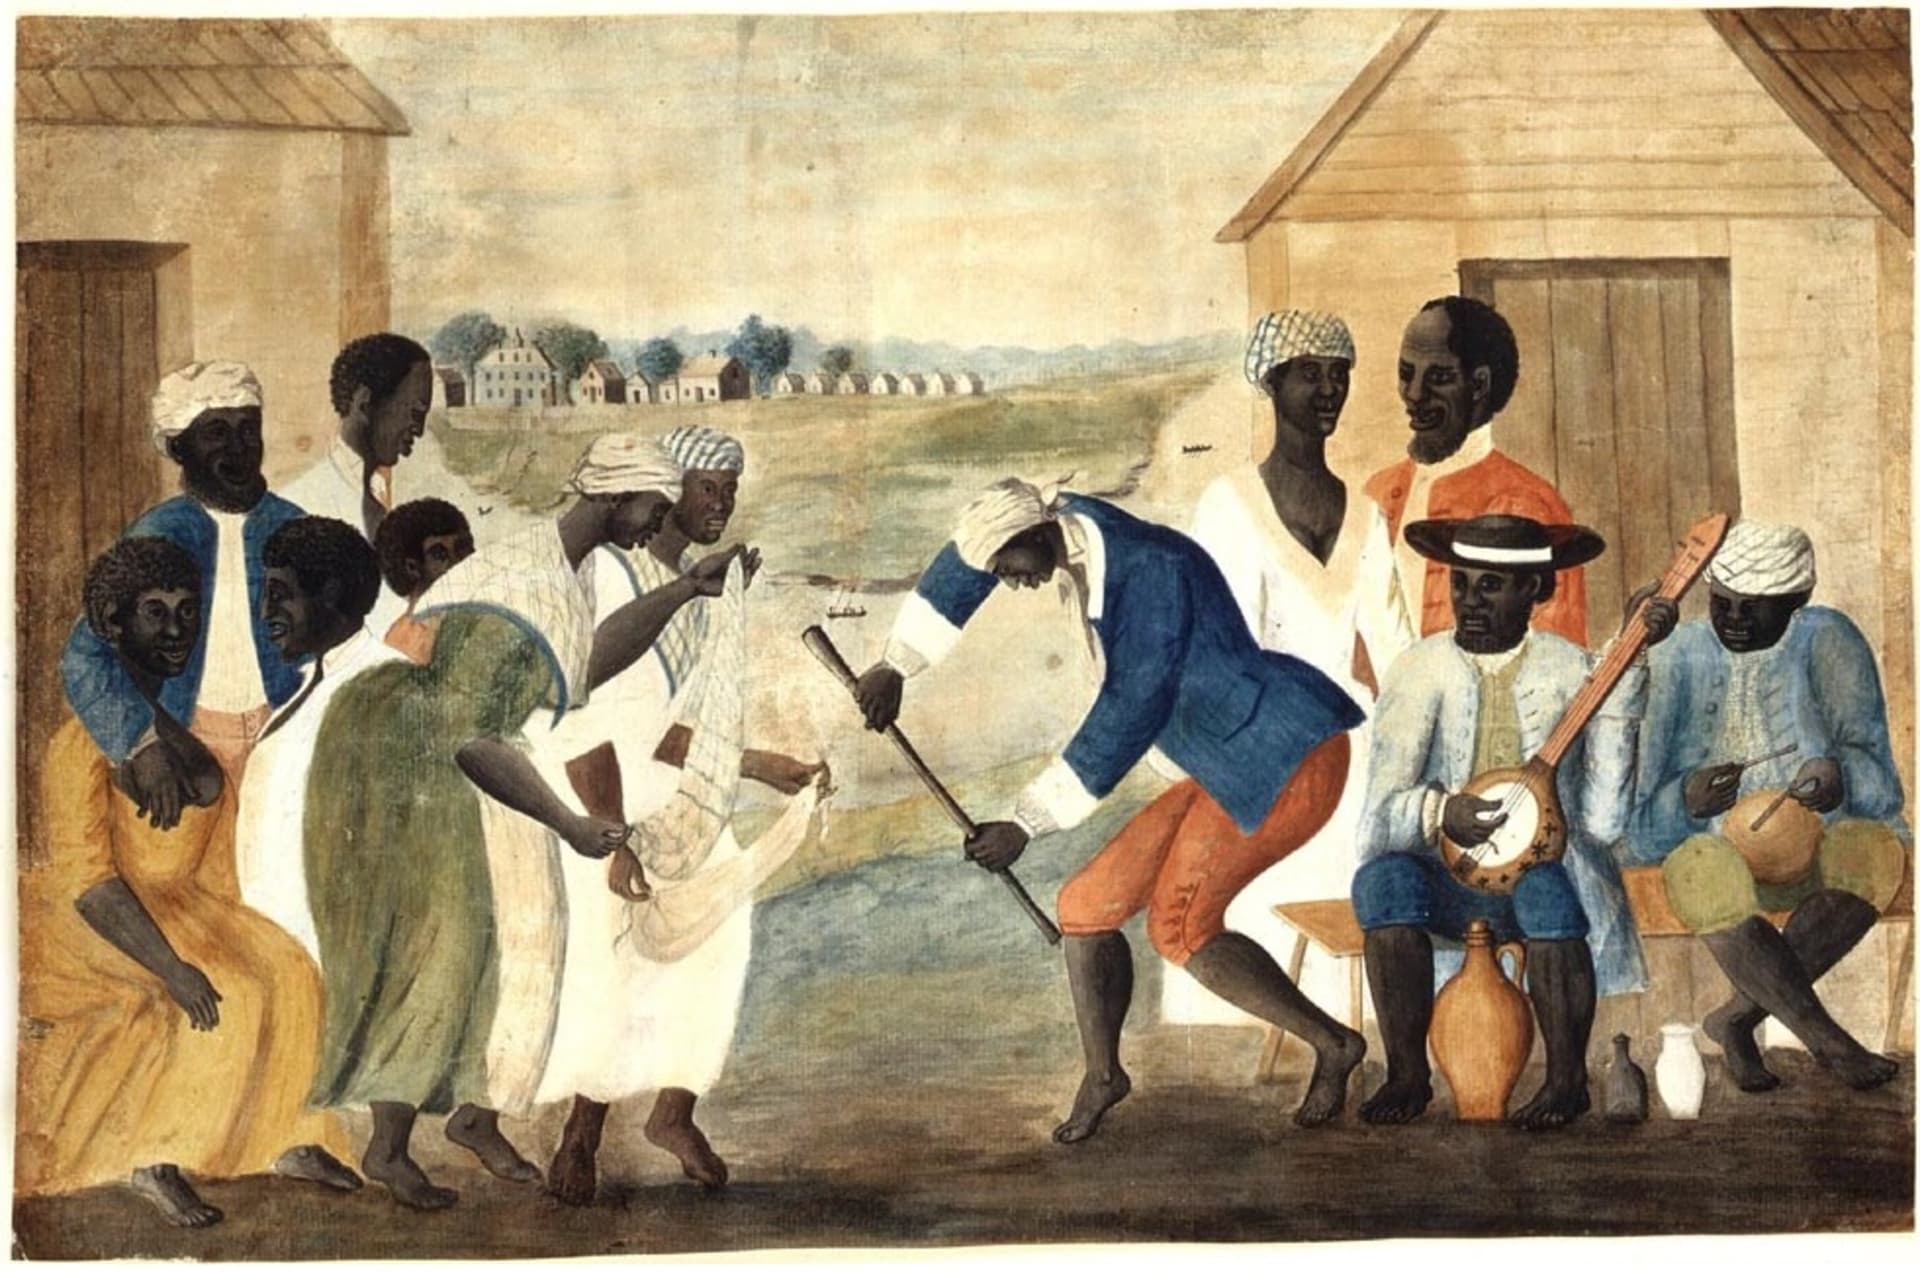  Otroci na plantáži v Jižní Karolině, cca 1790